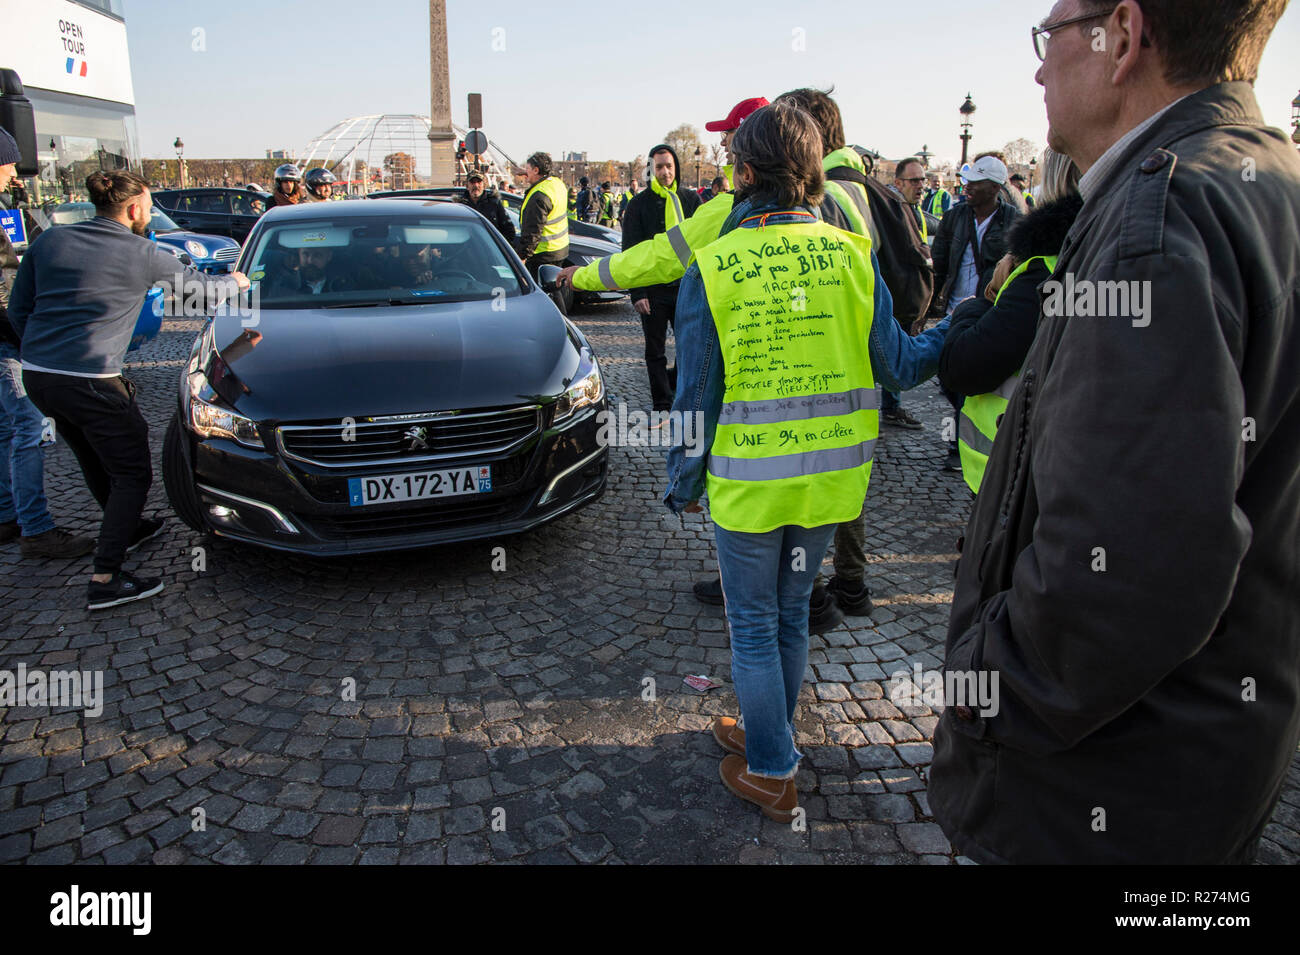 Les protestataires sont vu l'arrêt du véhicule pendant la manifestation. Personnes ont manifesté en jaune contre l'augmentation des prix du carburant à Paris, France. Banque D'Images